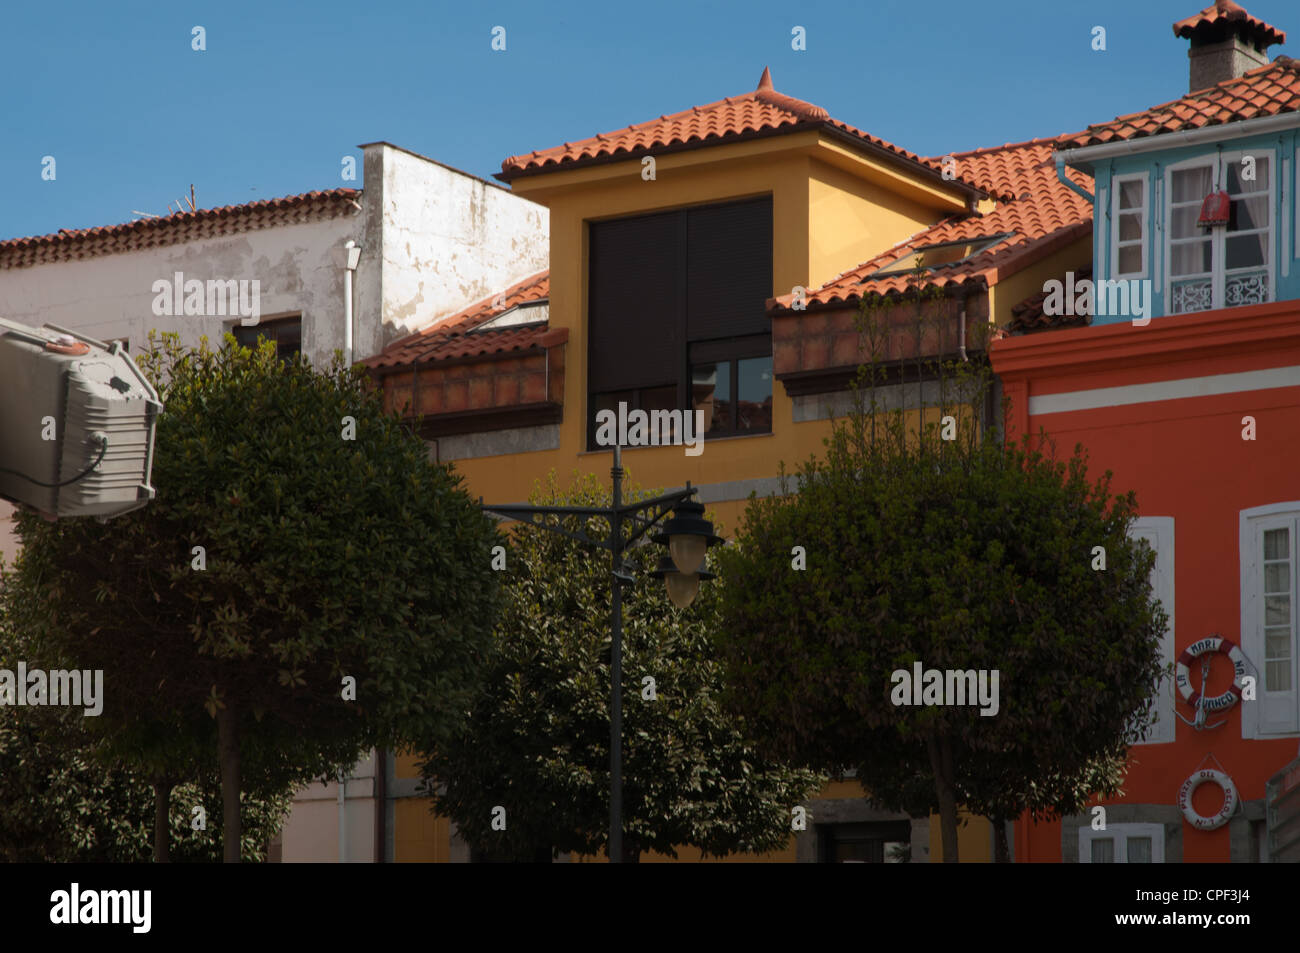 Spanische Architektur Luanco Avilles Spanien street Szene Erhaltung einheimischer buildingspreservation Stockfoto